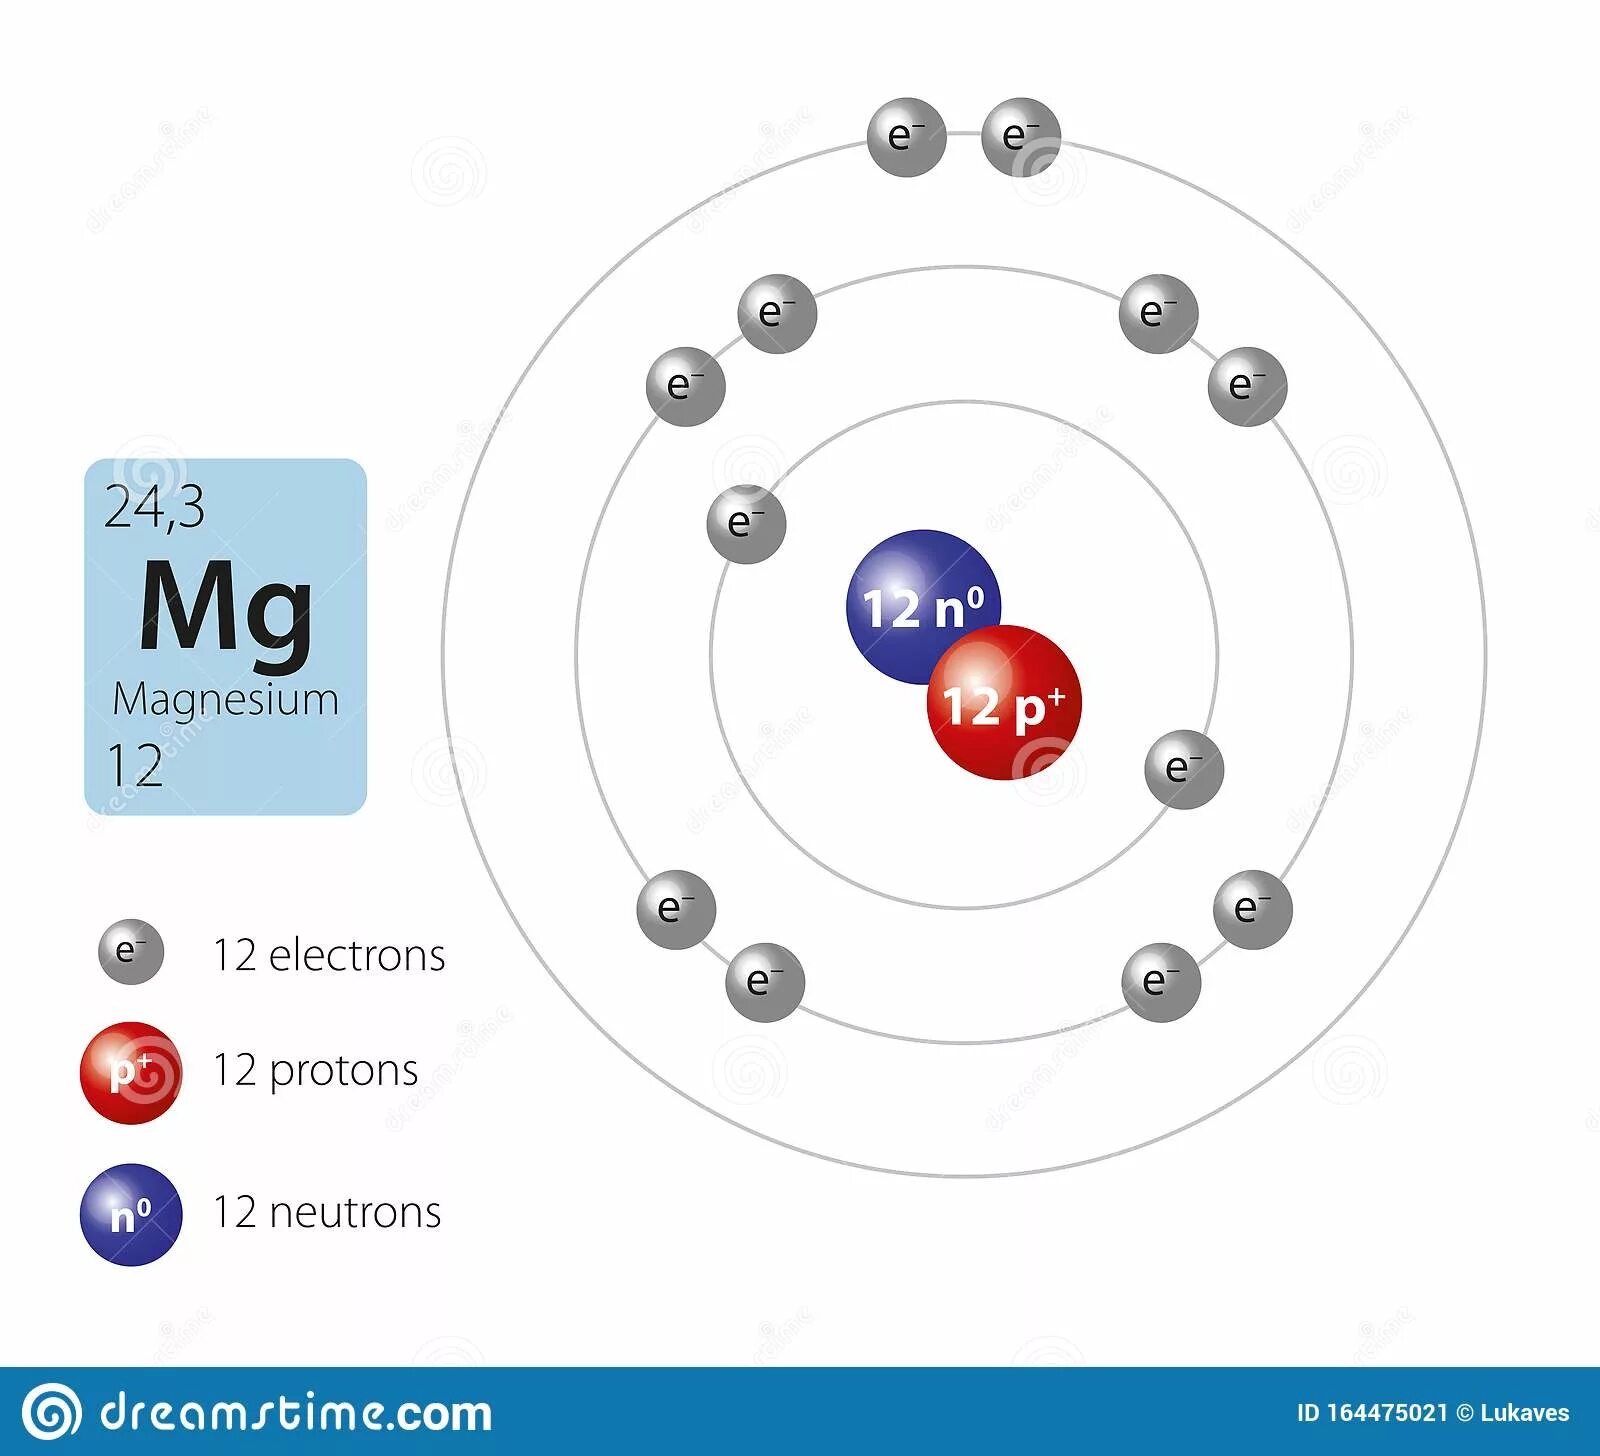 Три атома магния. Строение атома элемента магния. Модель атома элемента магний. Планетарная модель атома магния. Атомная модель химического элемента магний.